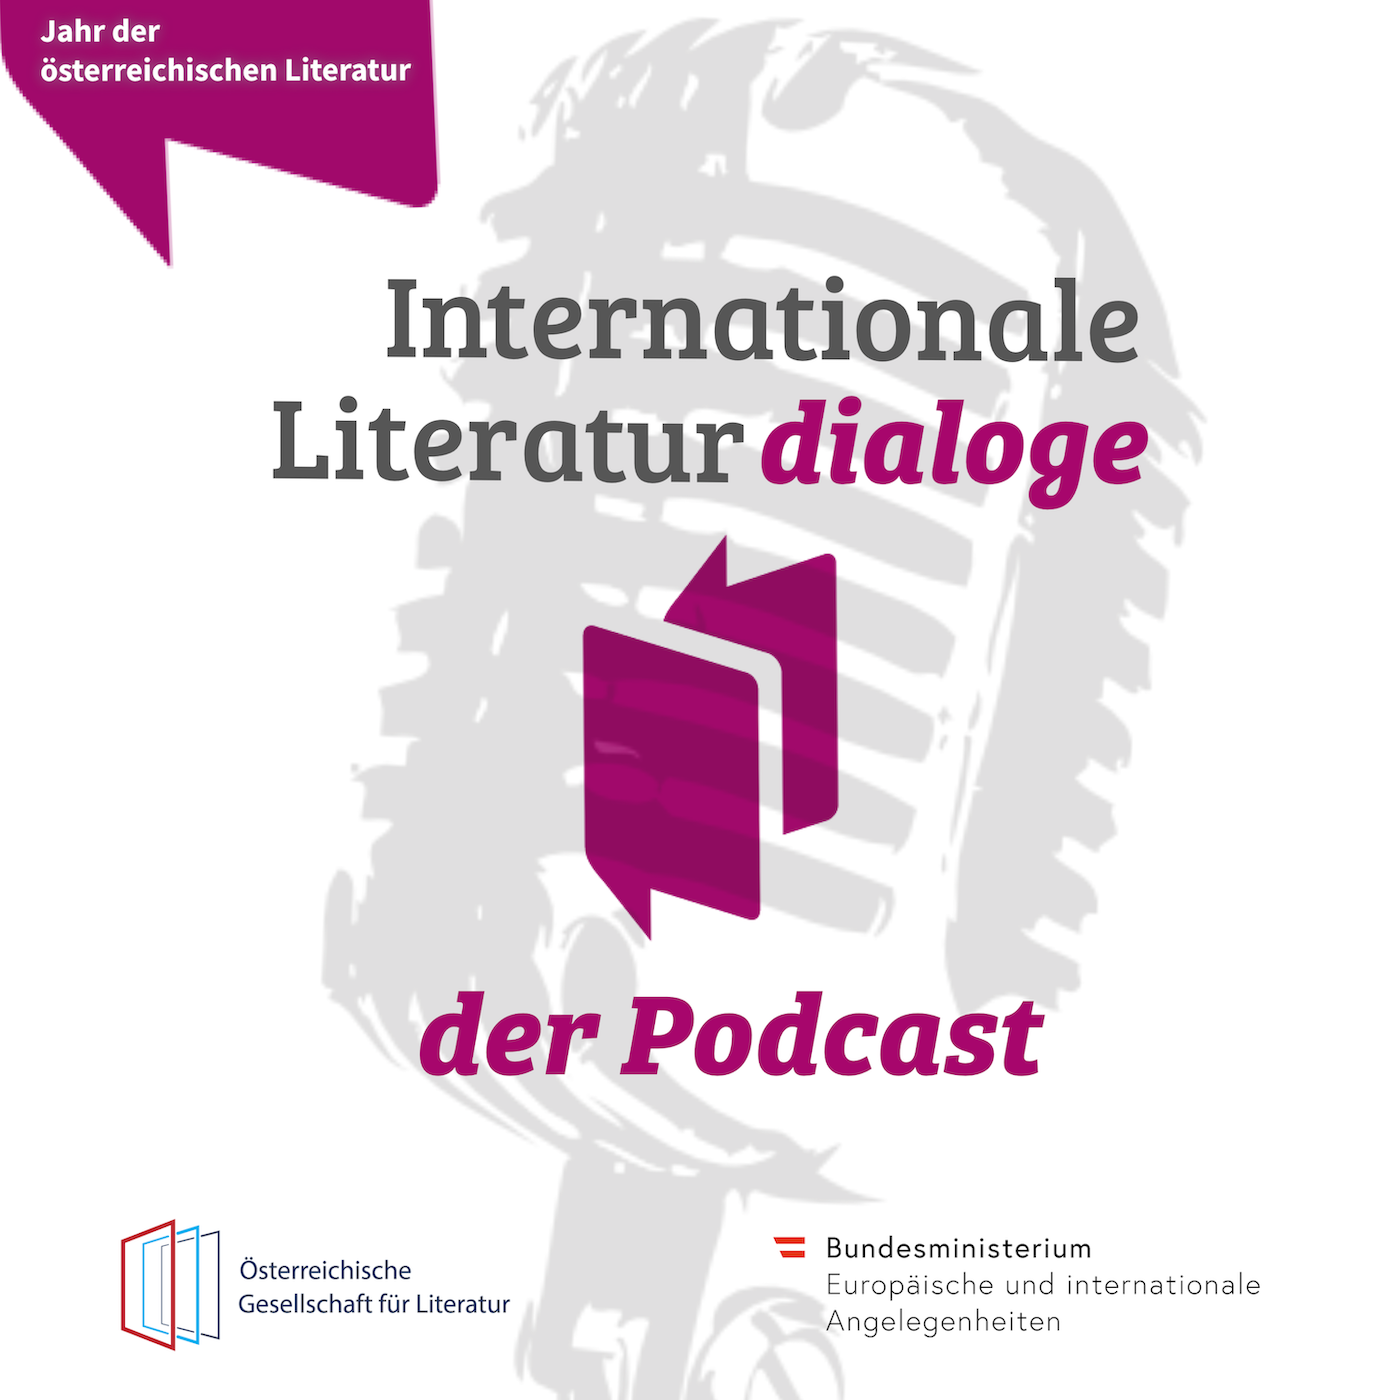 Internationale Literaturdialoge - der Podcast